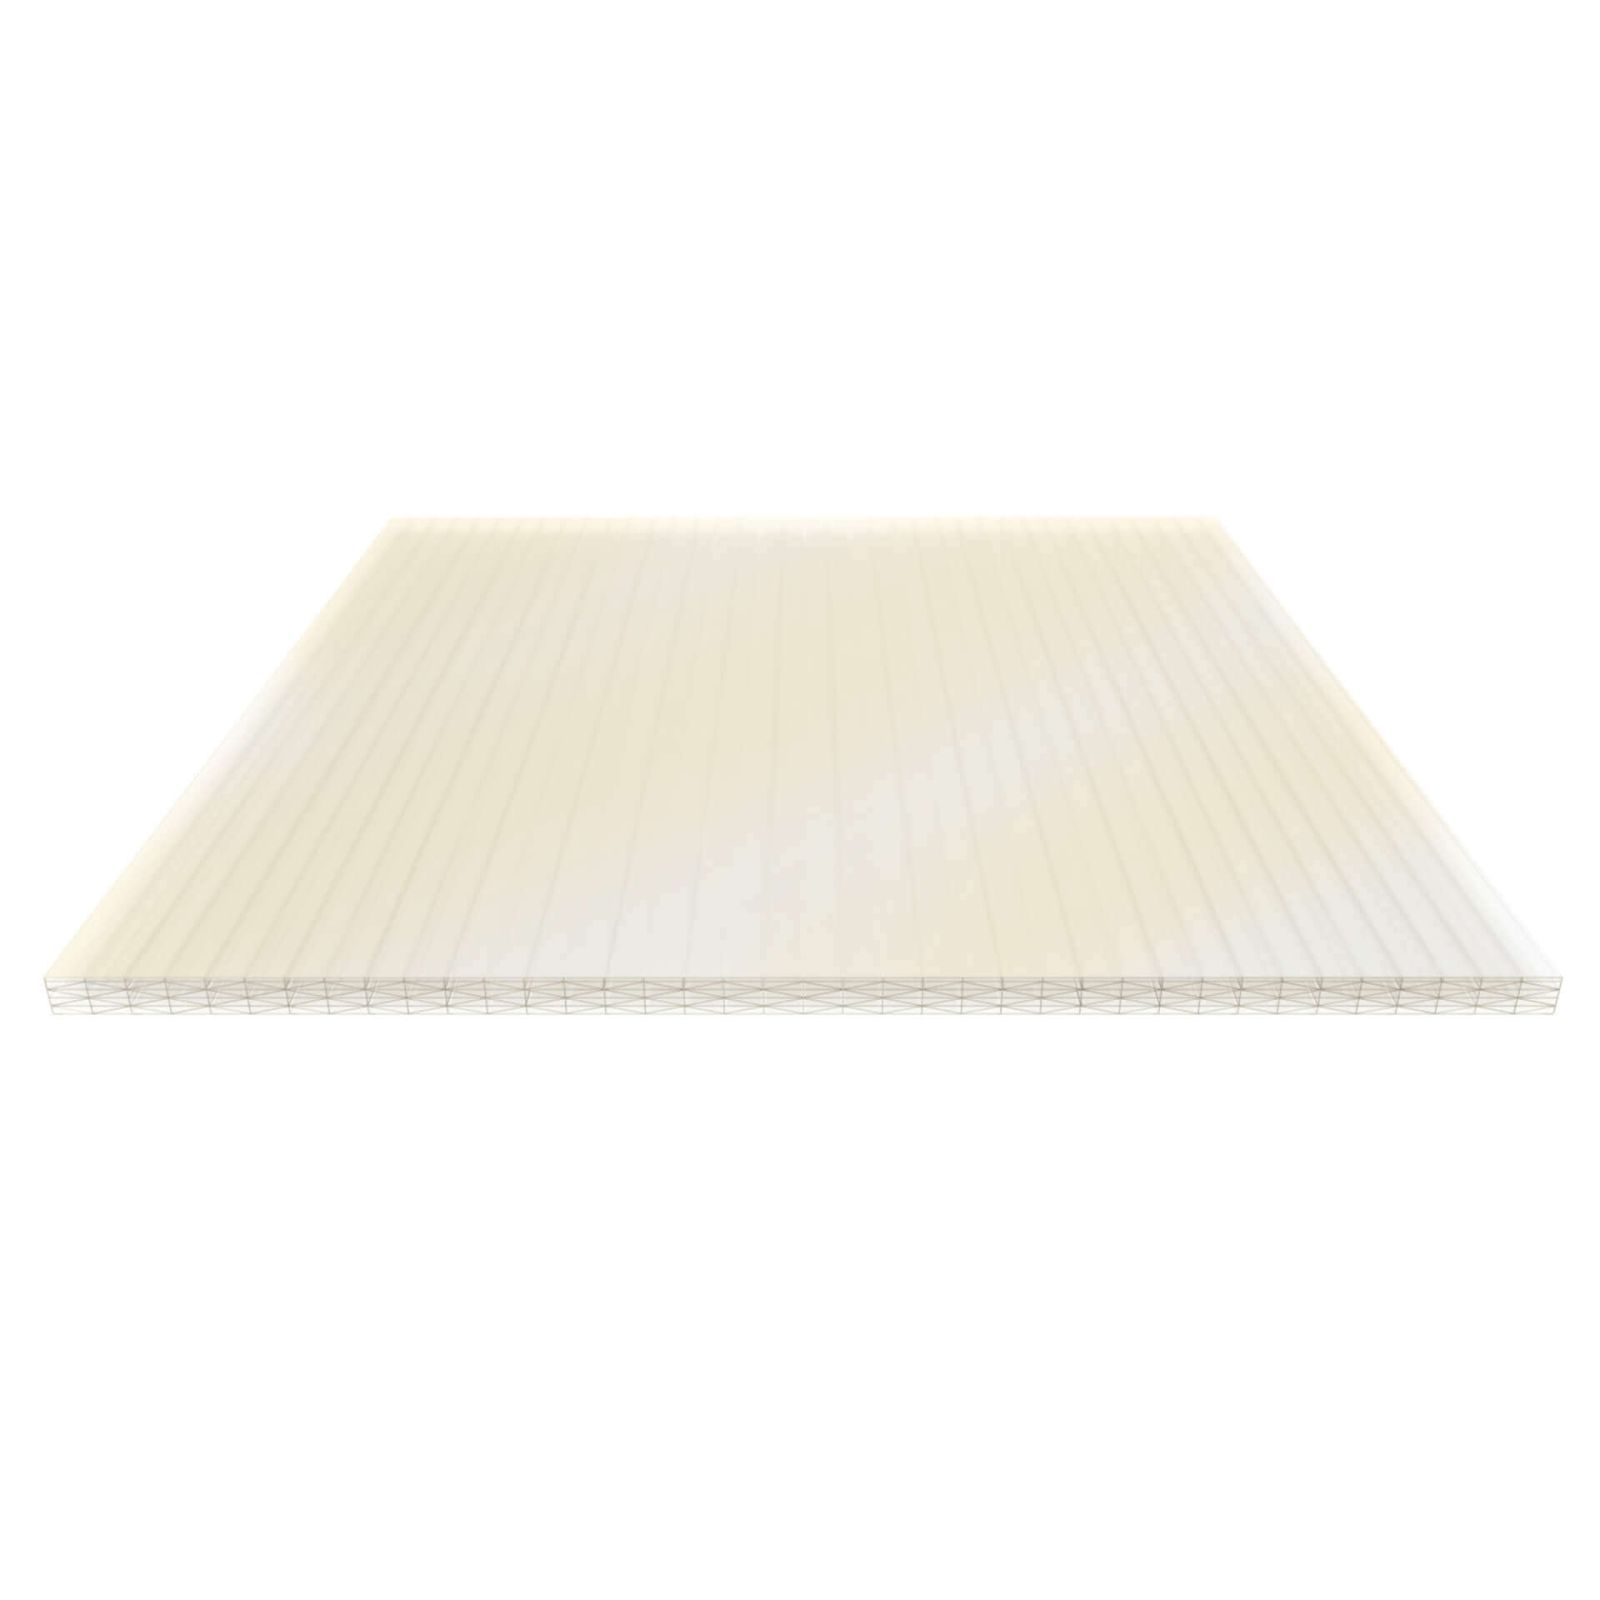 Polycarbonat Stegplatte | 32 mm | Breite 1250 mm | Gold-Opal | Ideal für Wintergarten | 500 mm